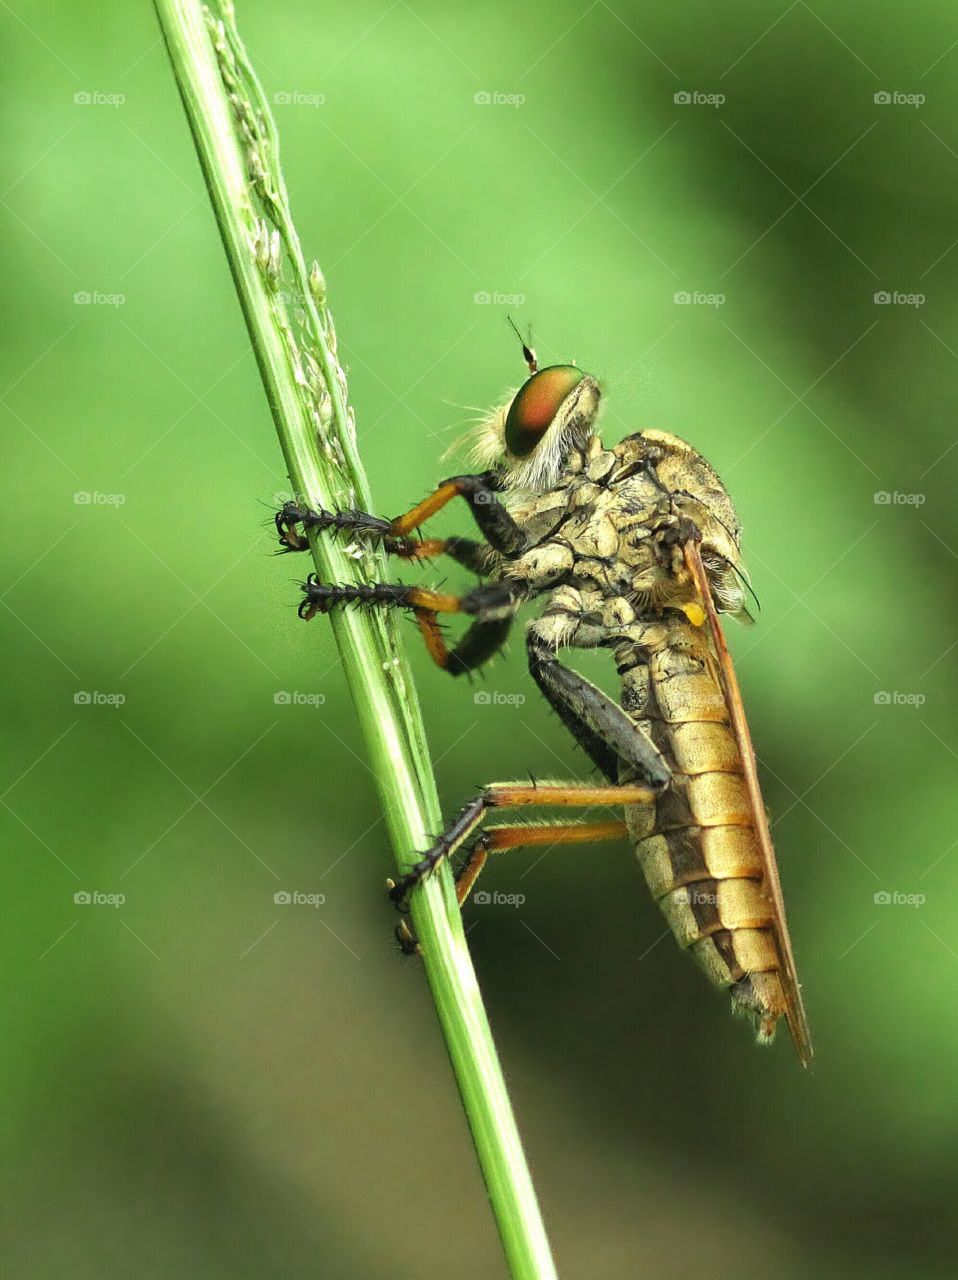 Female Robberfly (Asilidae)
Doing Nothing